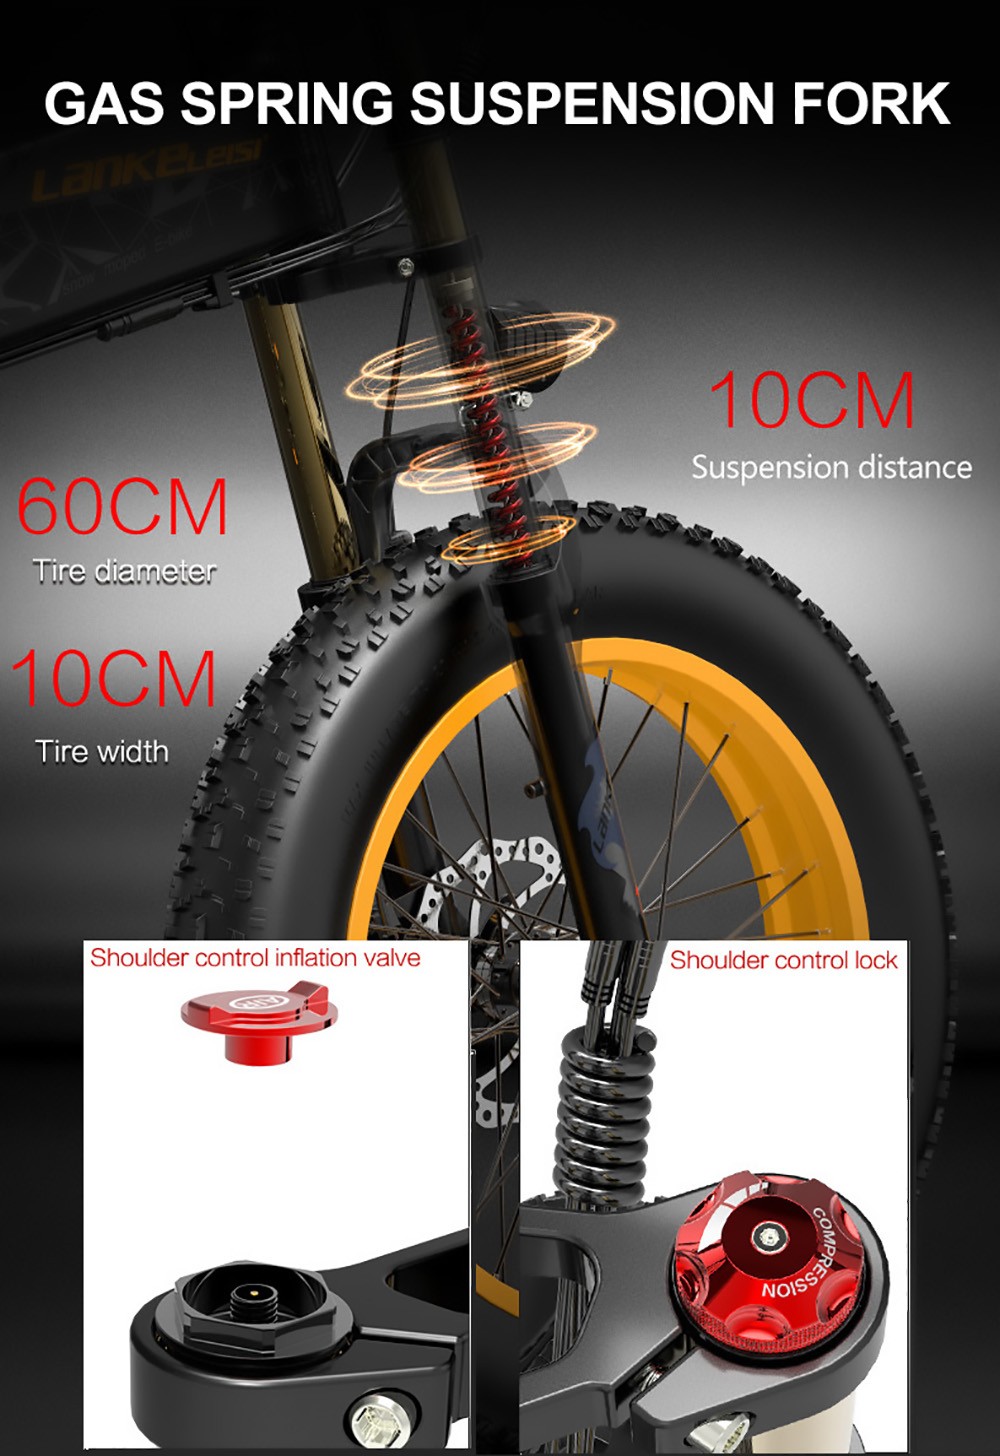 LANKELEISI X3000 Plus elektromos kerékpár 20 hüvelykes 1000 W 43Km/h 17.5AH Sárga